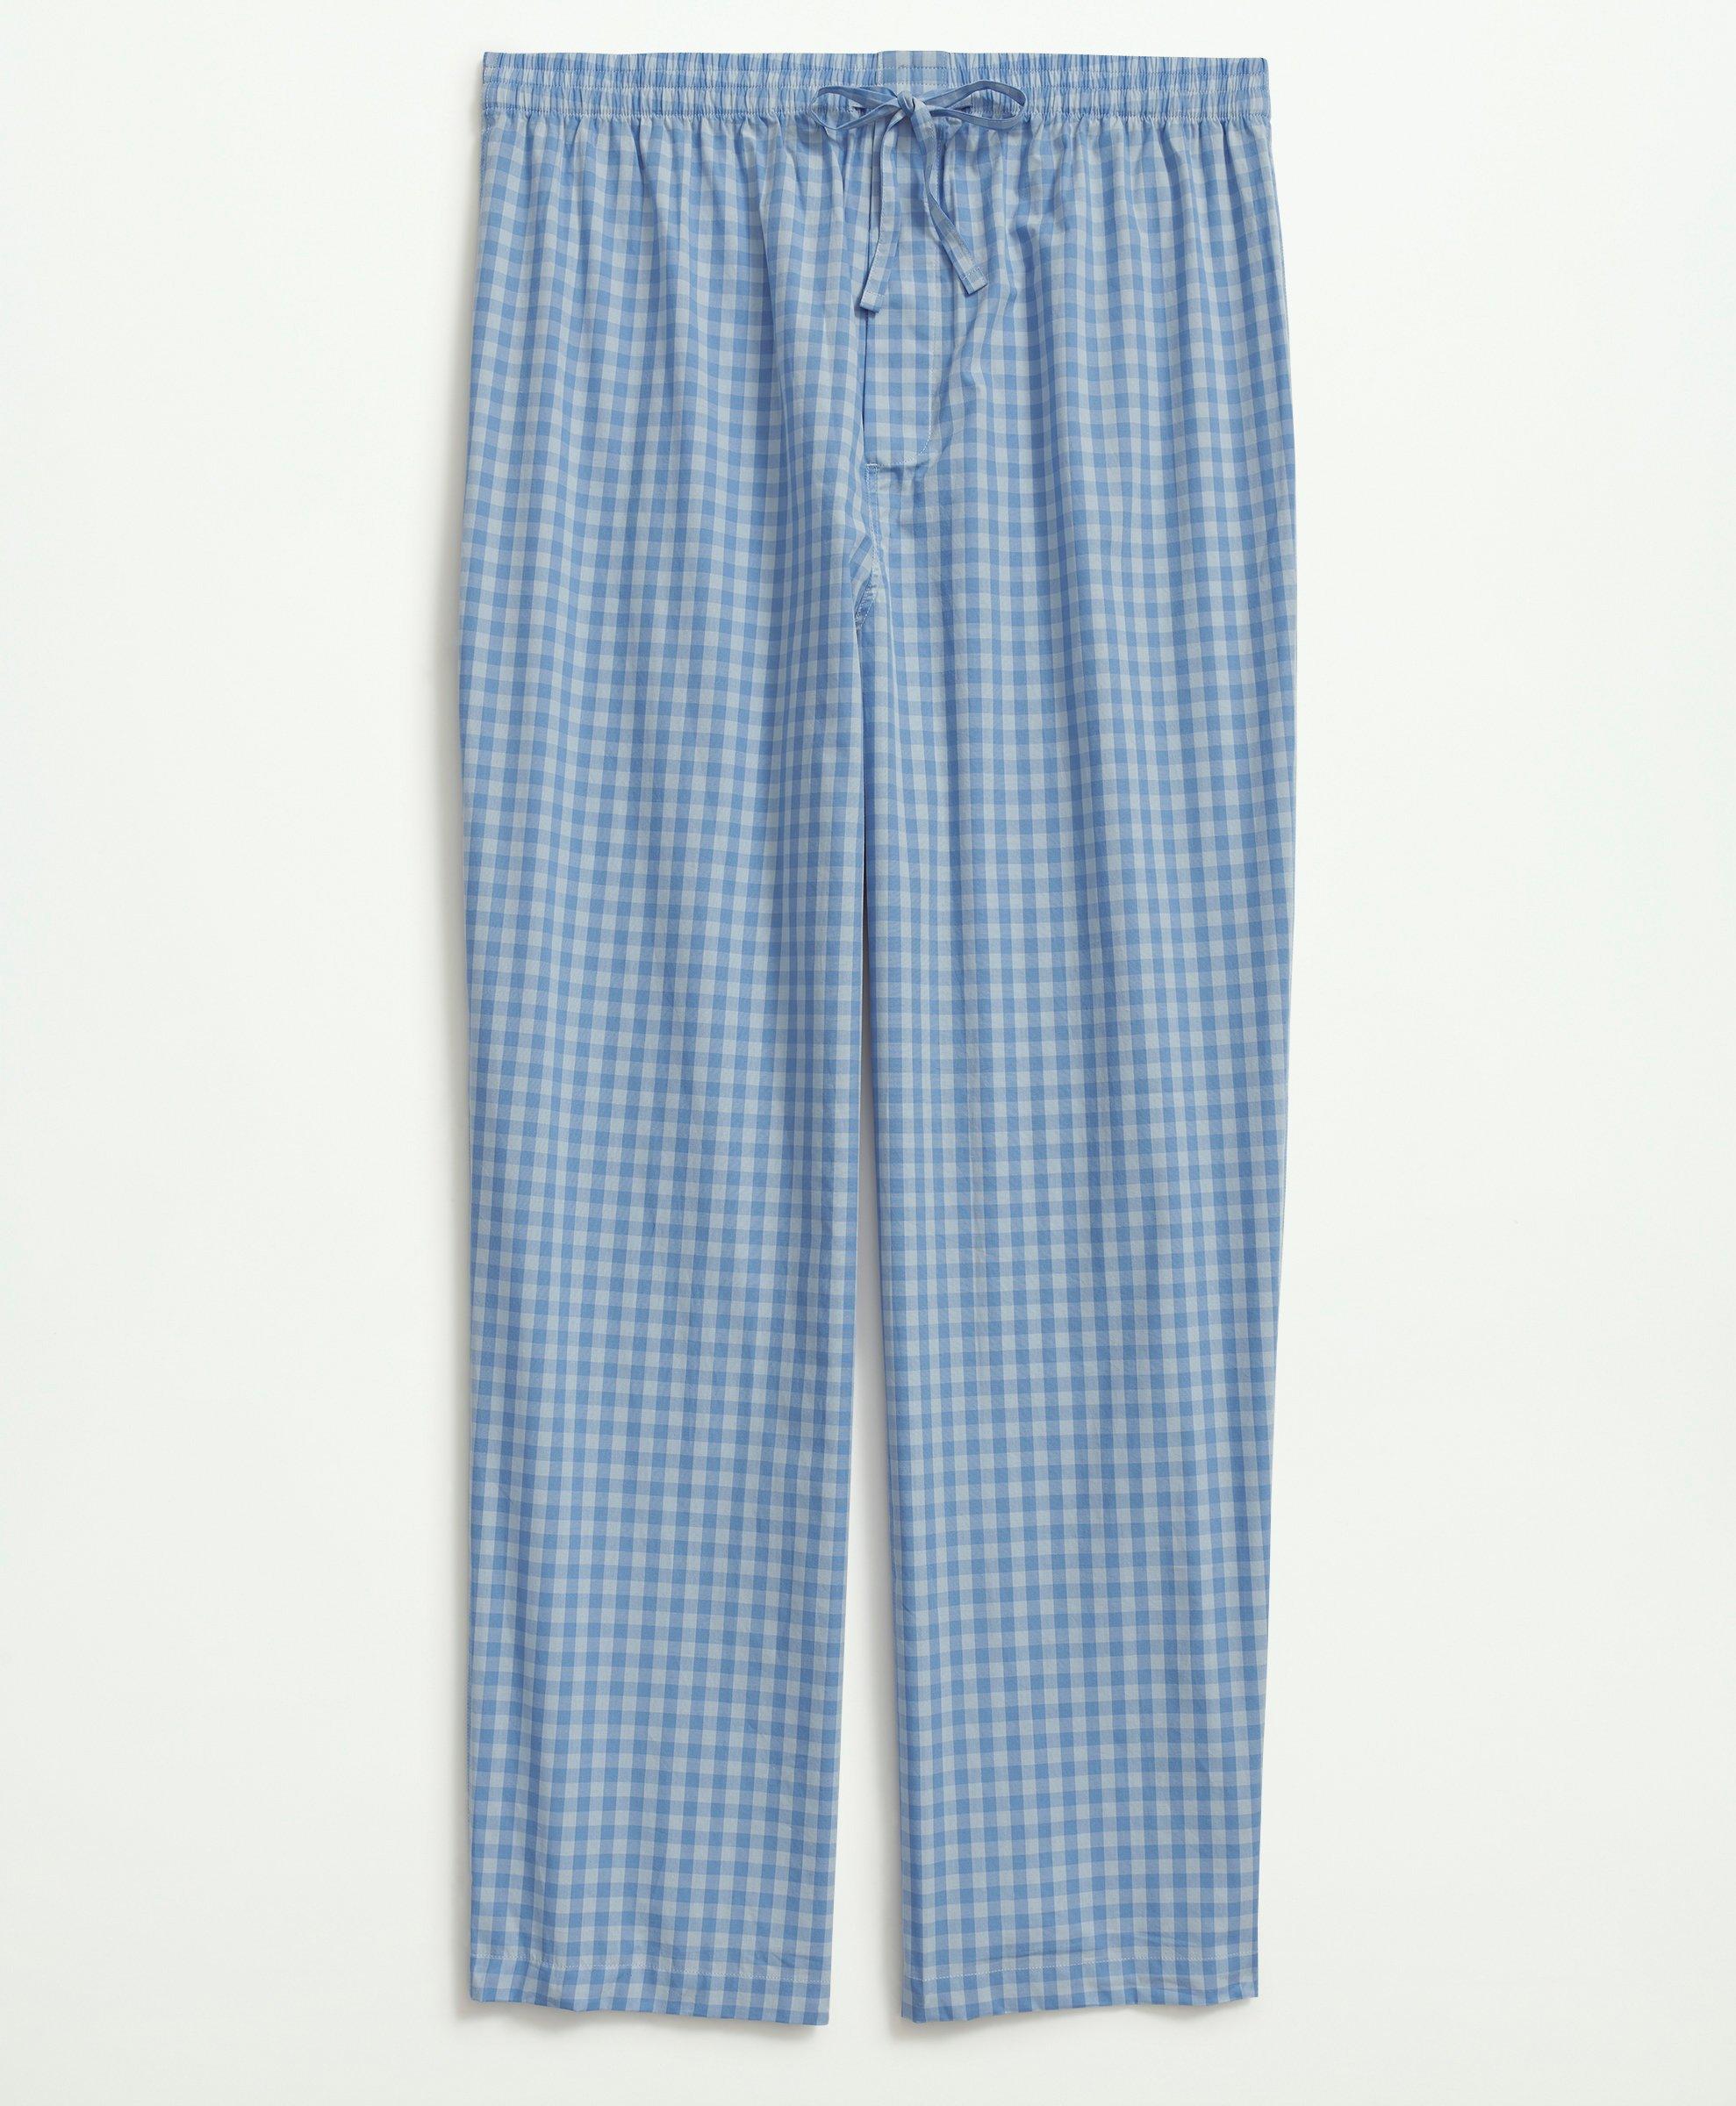 Cotton Poplin Gingham Pajamas